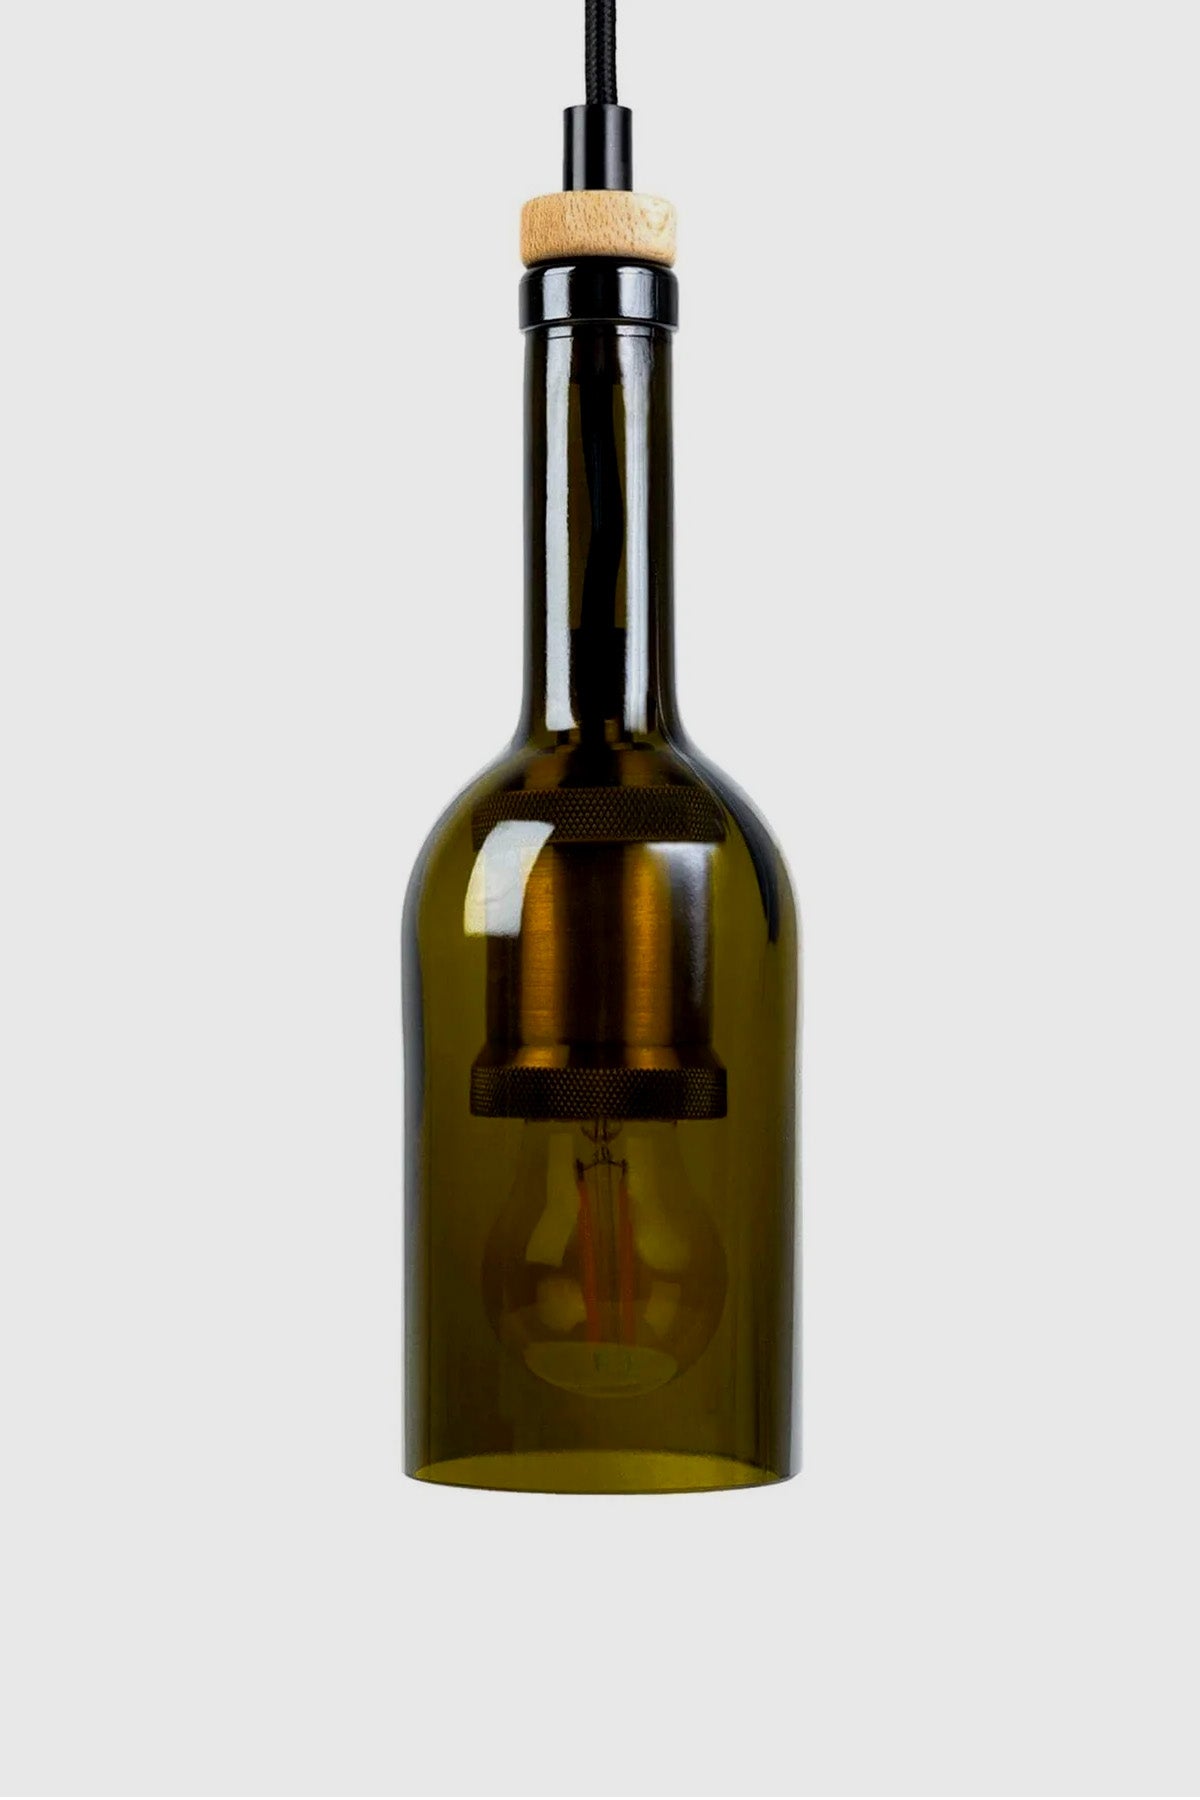 Lampe af vinflaske